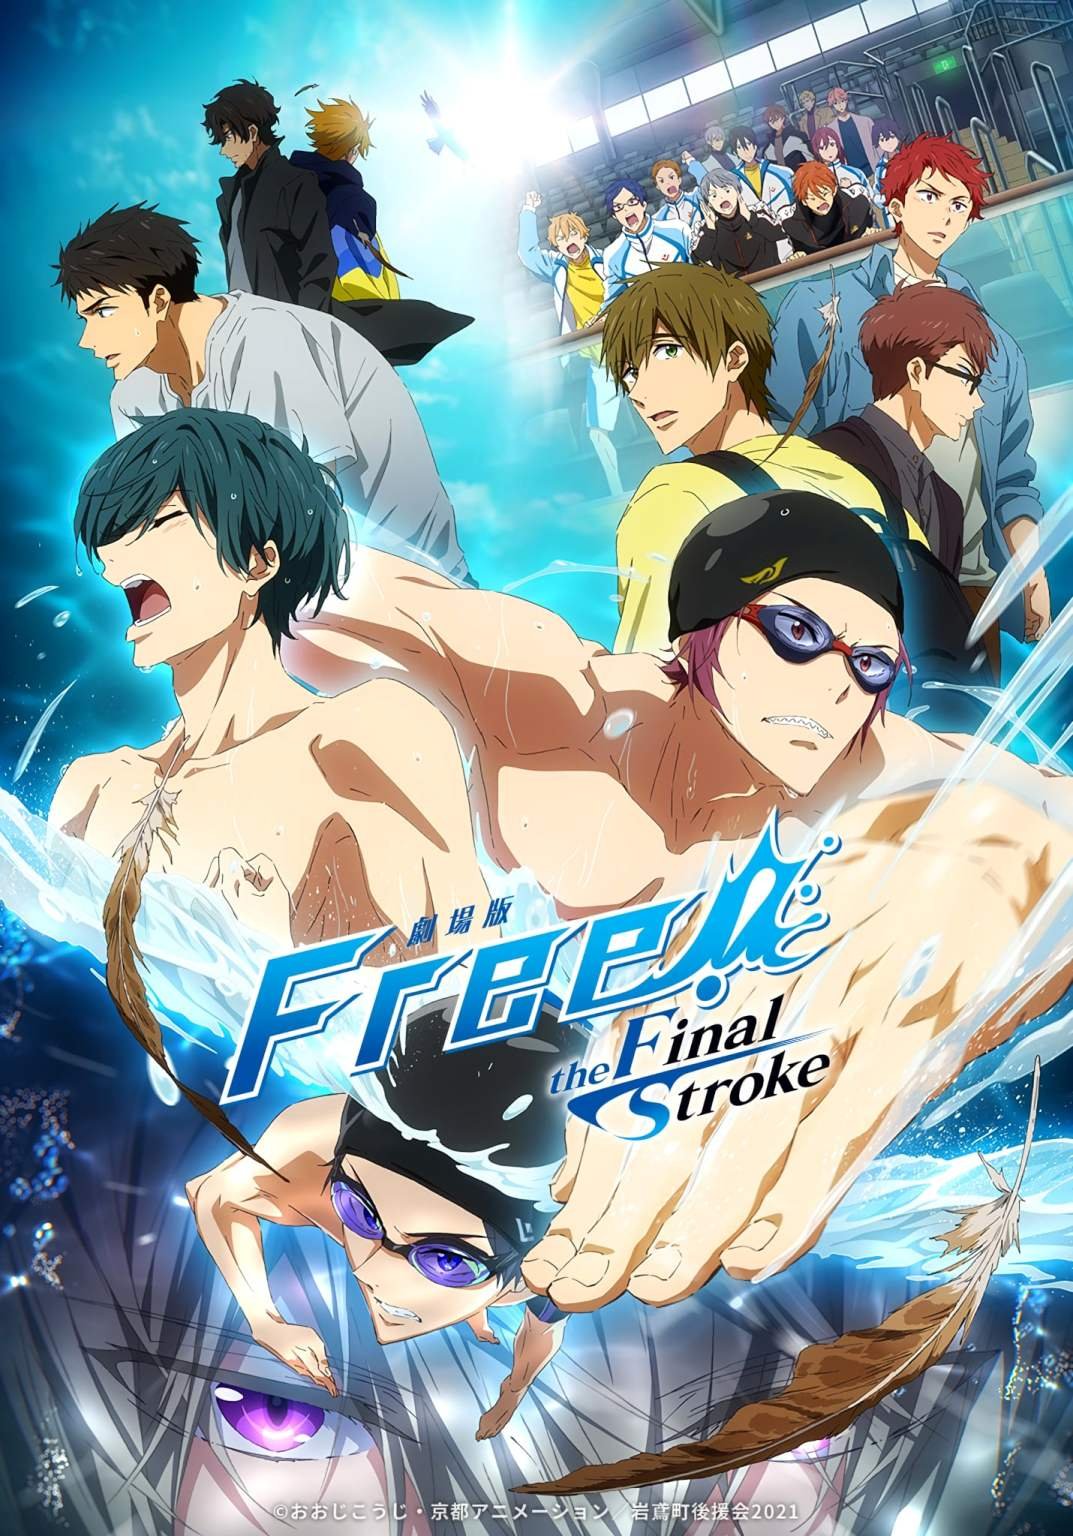 Free! – Iwatobi Swim Club (1ª Temporada) - 4 de Julho de 2013